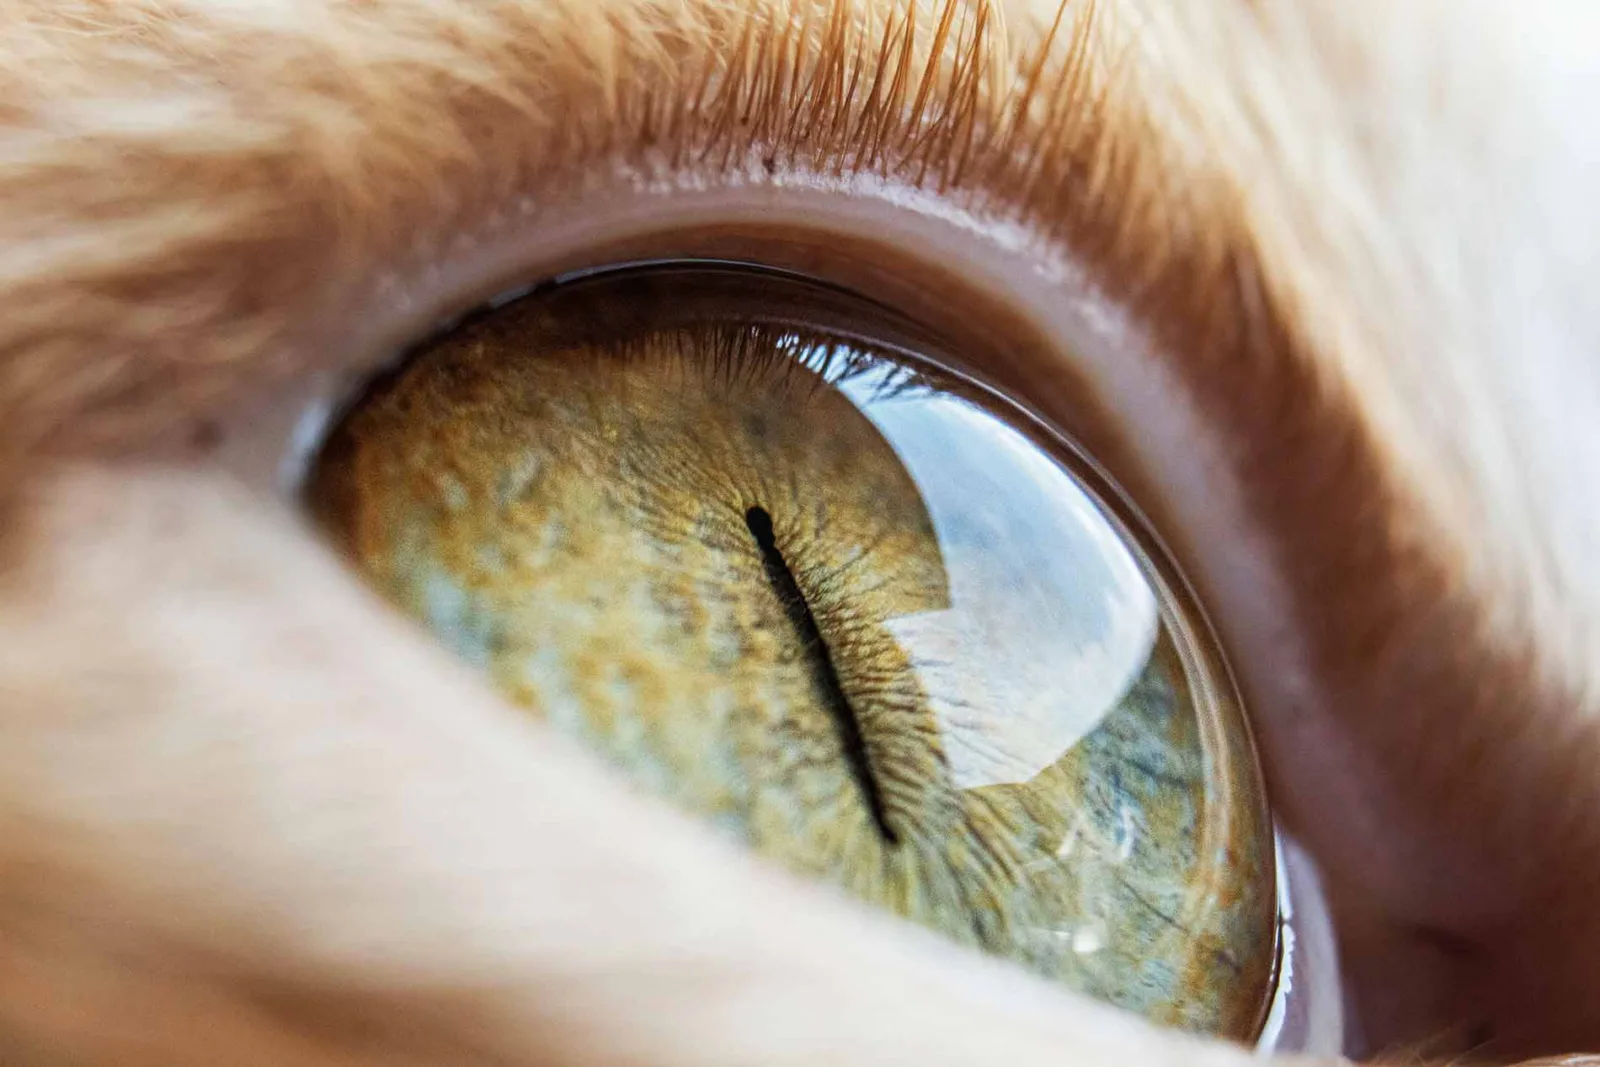 Eine hochauflösende Nahaufnahme des Auges einer Hauskatze. Das Auge ist leuchtend grün mit einer engen, vertikalen Pupille und detaillierten faserigen Strukturen in der Iris. Das umgebende Fell ist weich und orange.